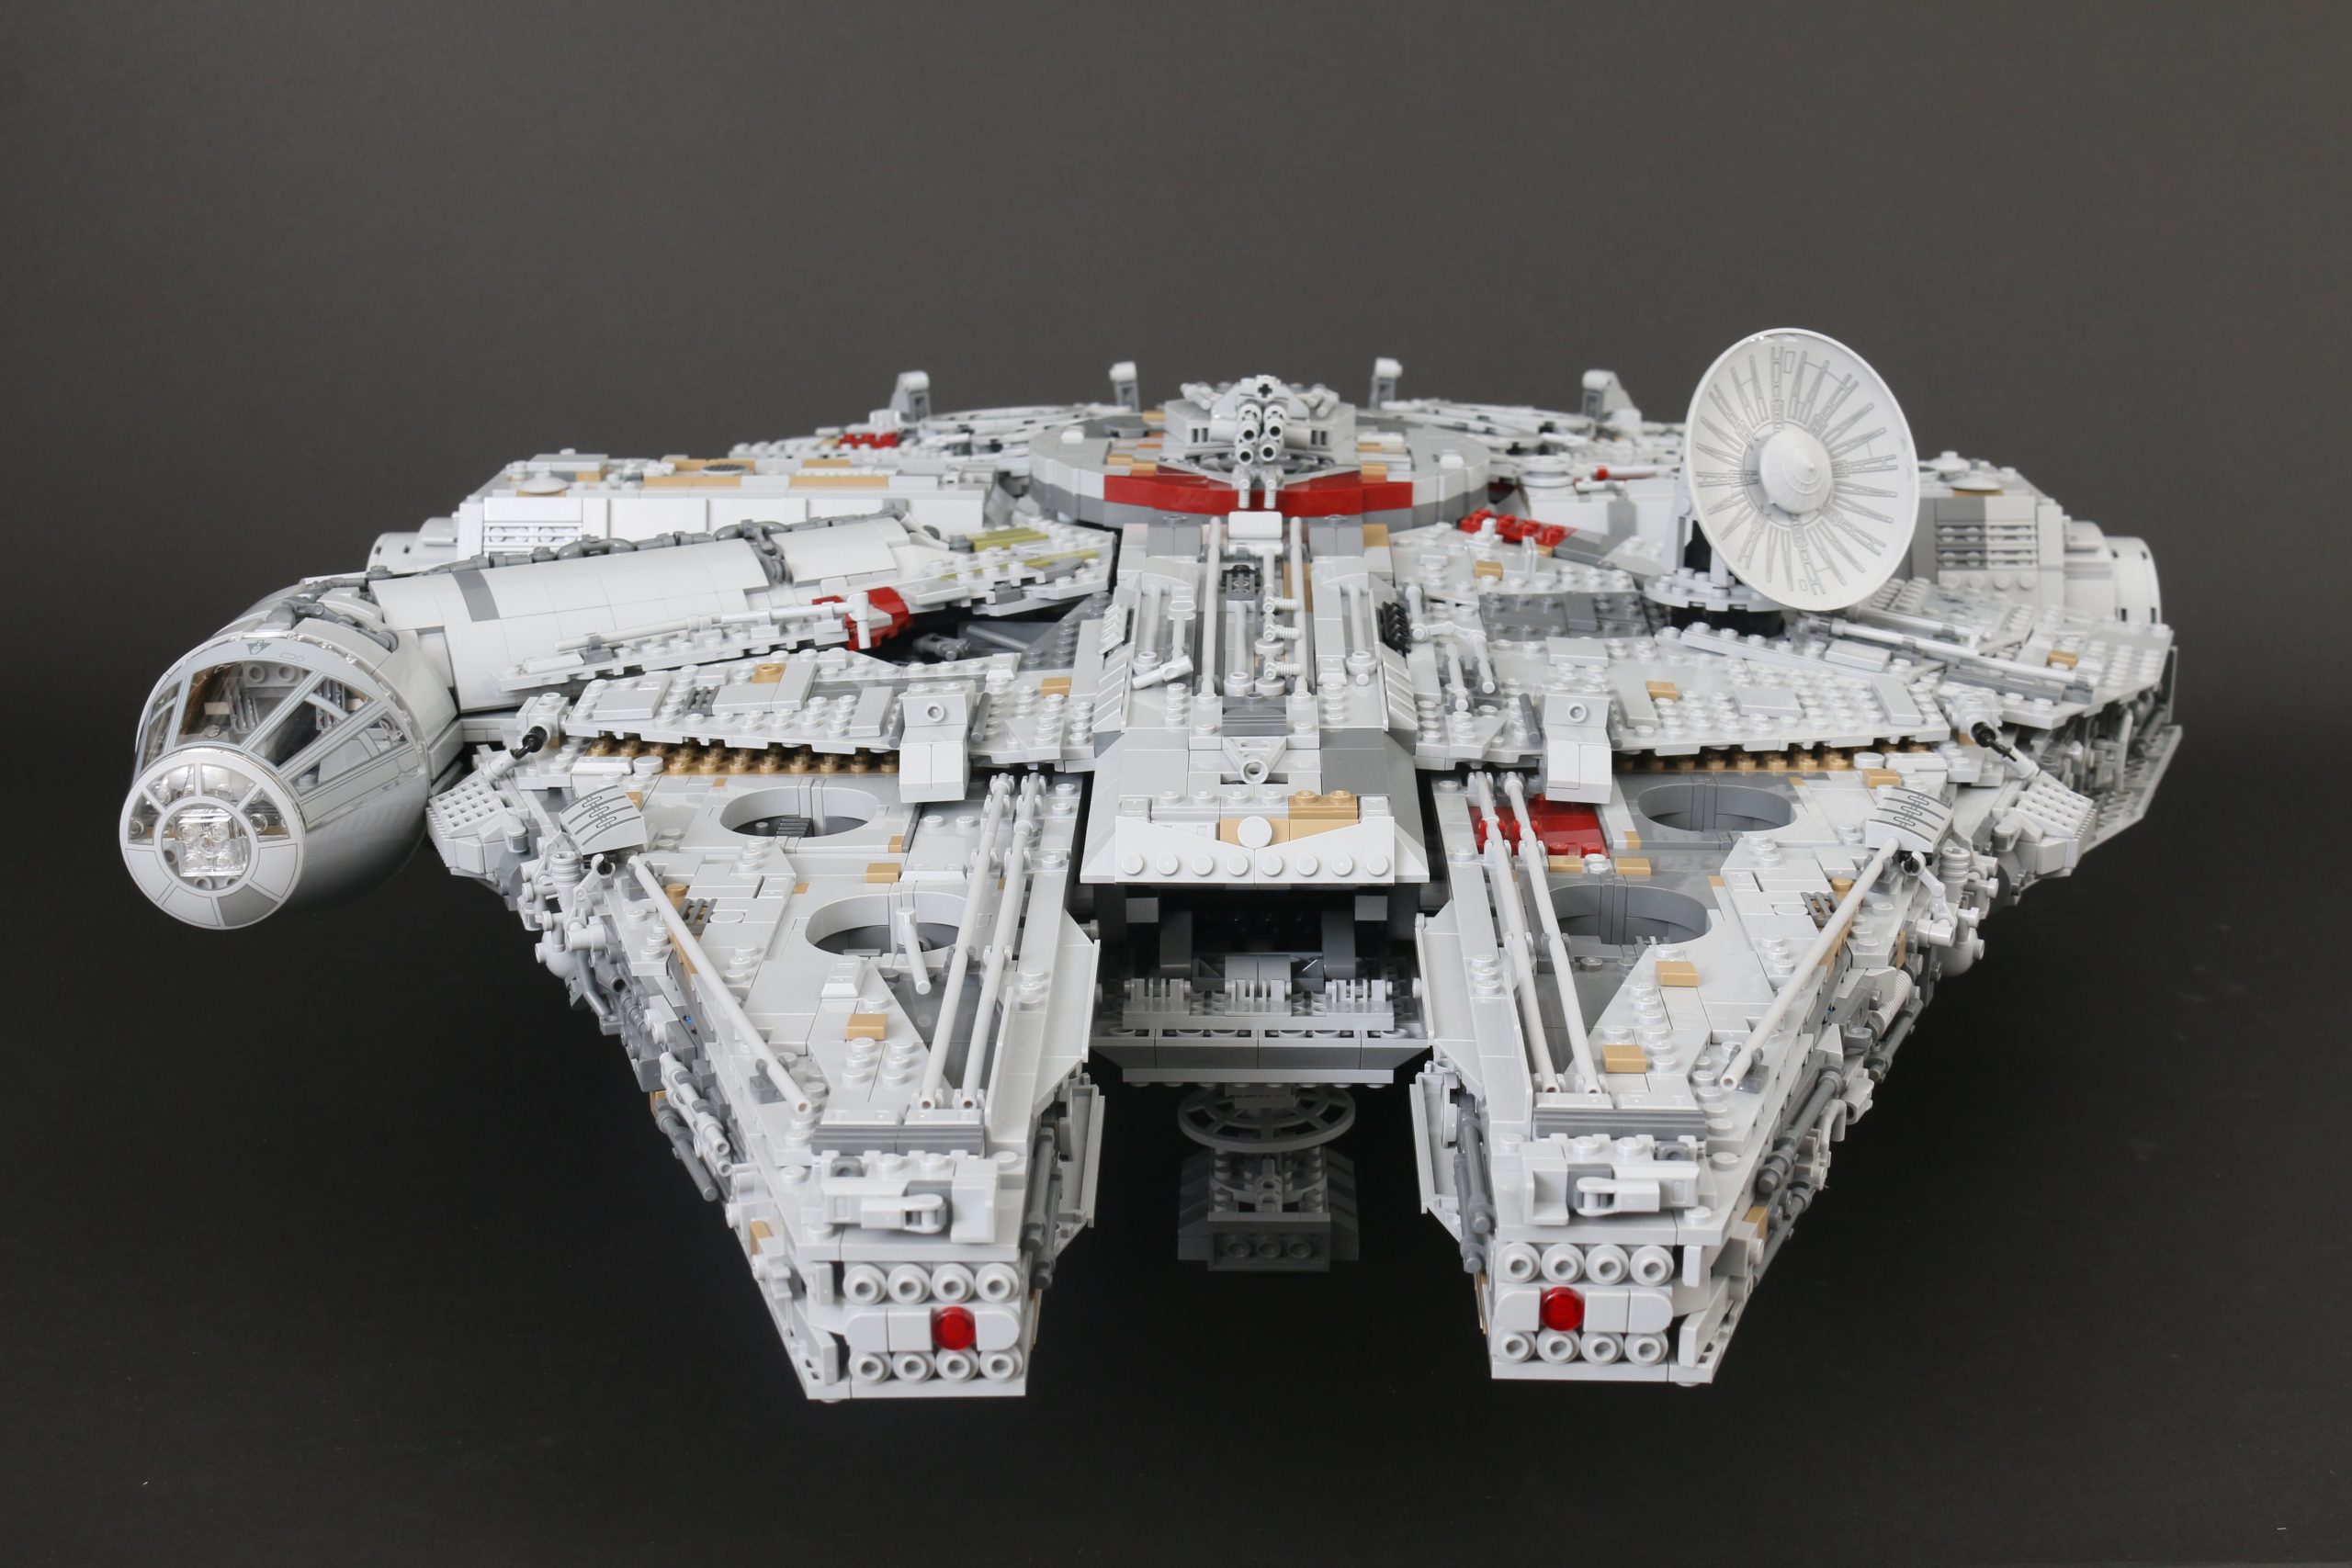 Quale potrebbe essere il futuro di LEGO Star Wars?